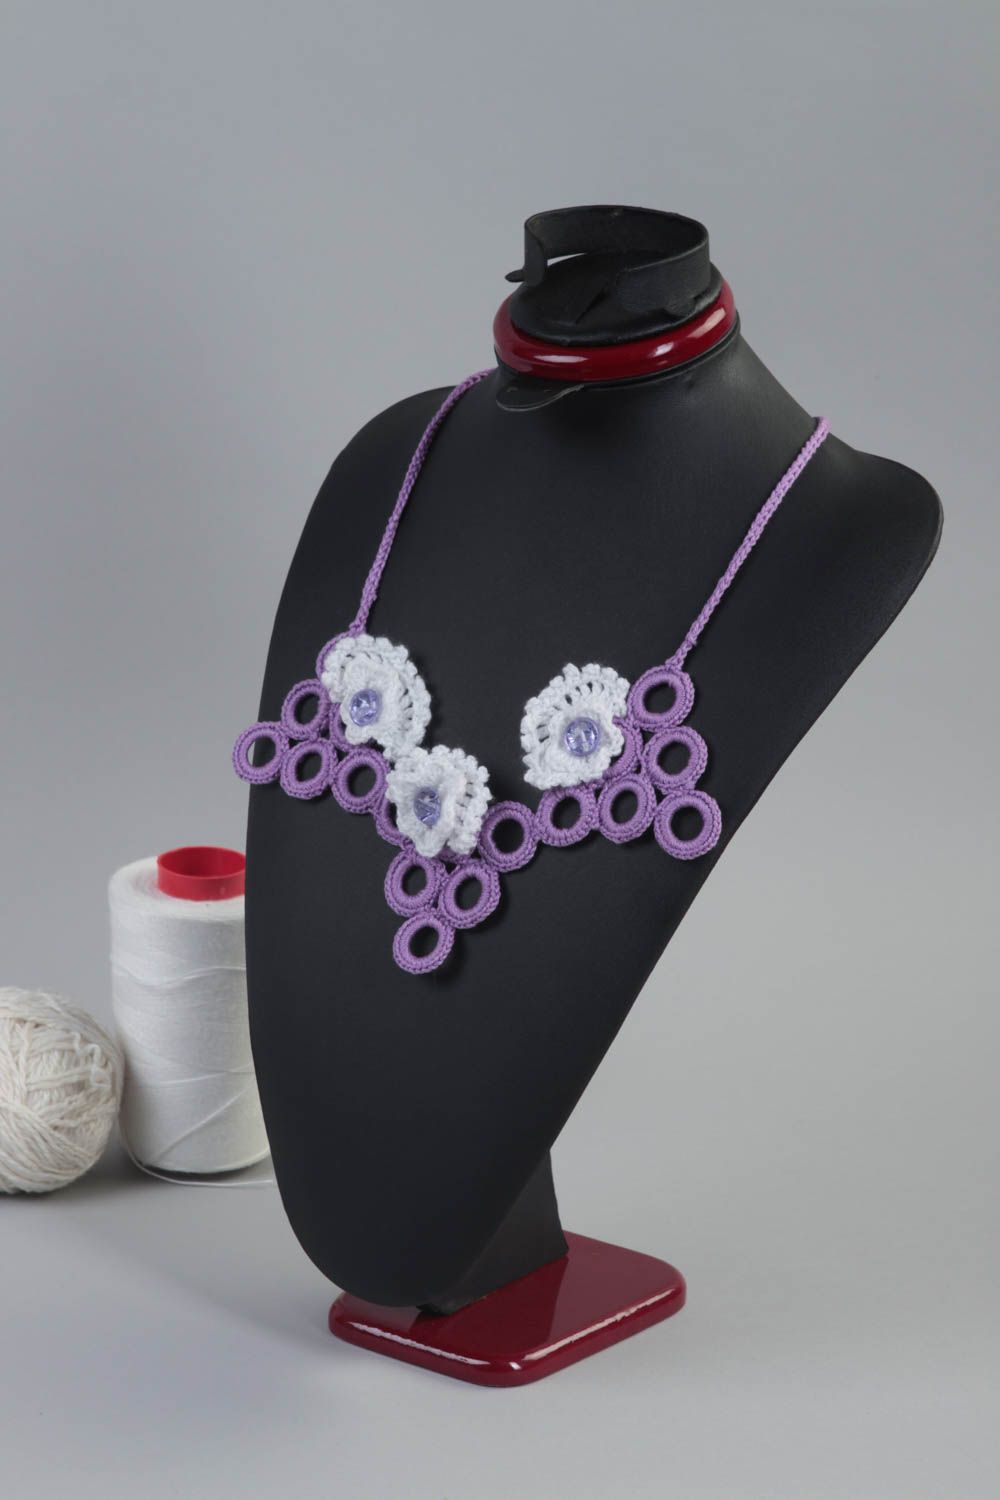 Stylish neck jewelry female handmade necklace textile unusual necklace photo 1